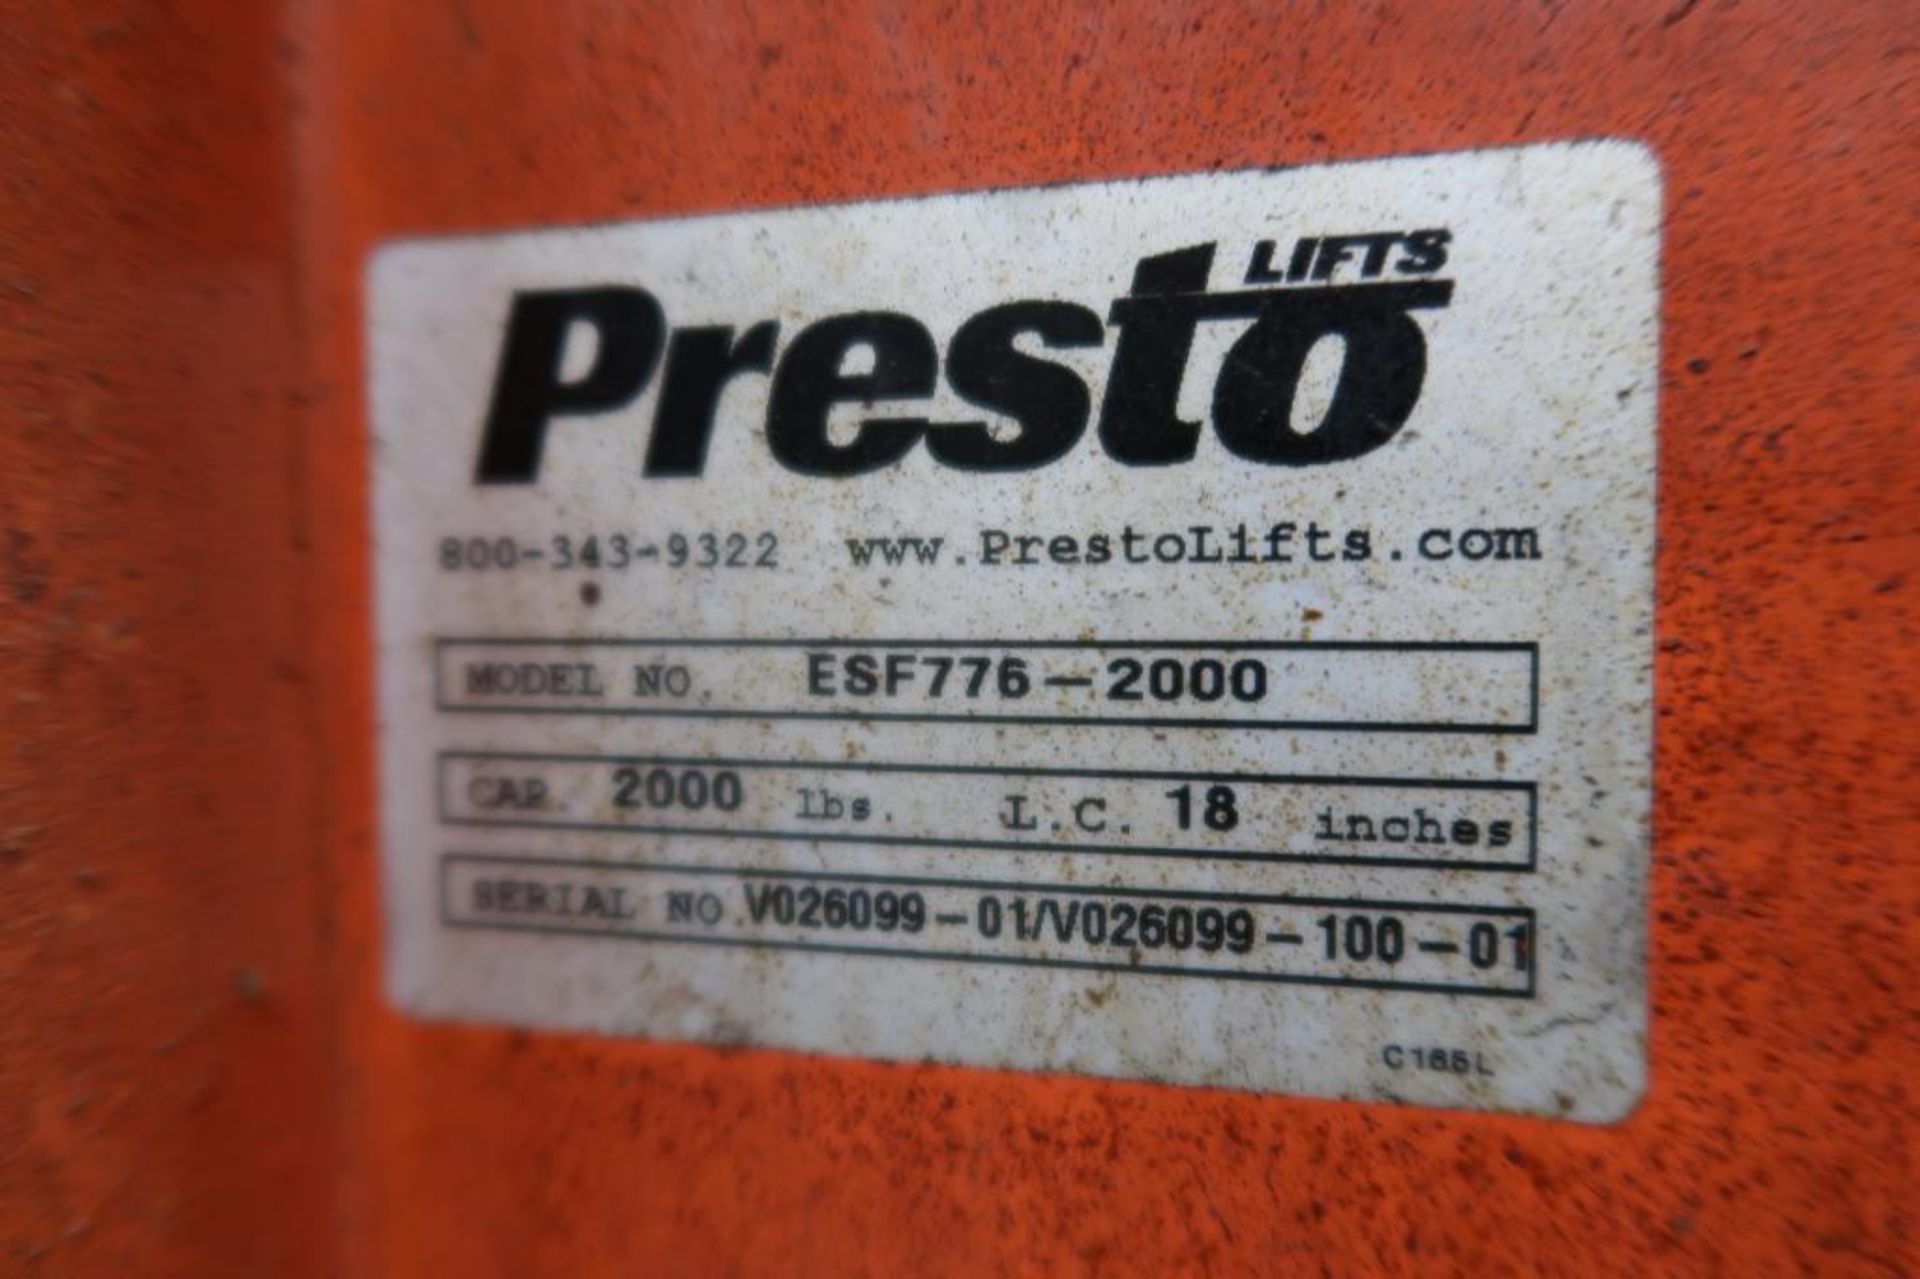 Presto Lifts Model ESF776-2000, Die Lift - Image 2 of 4